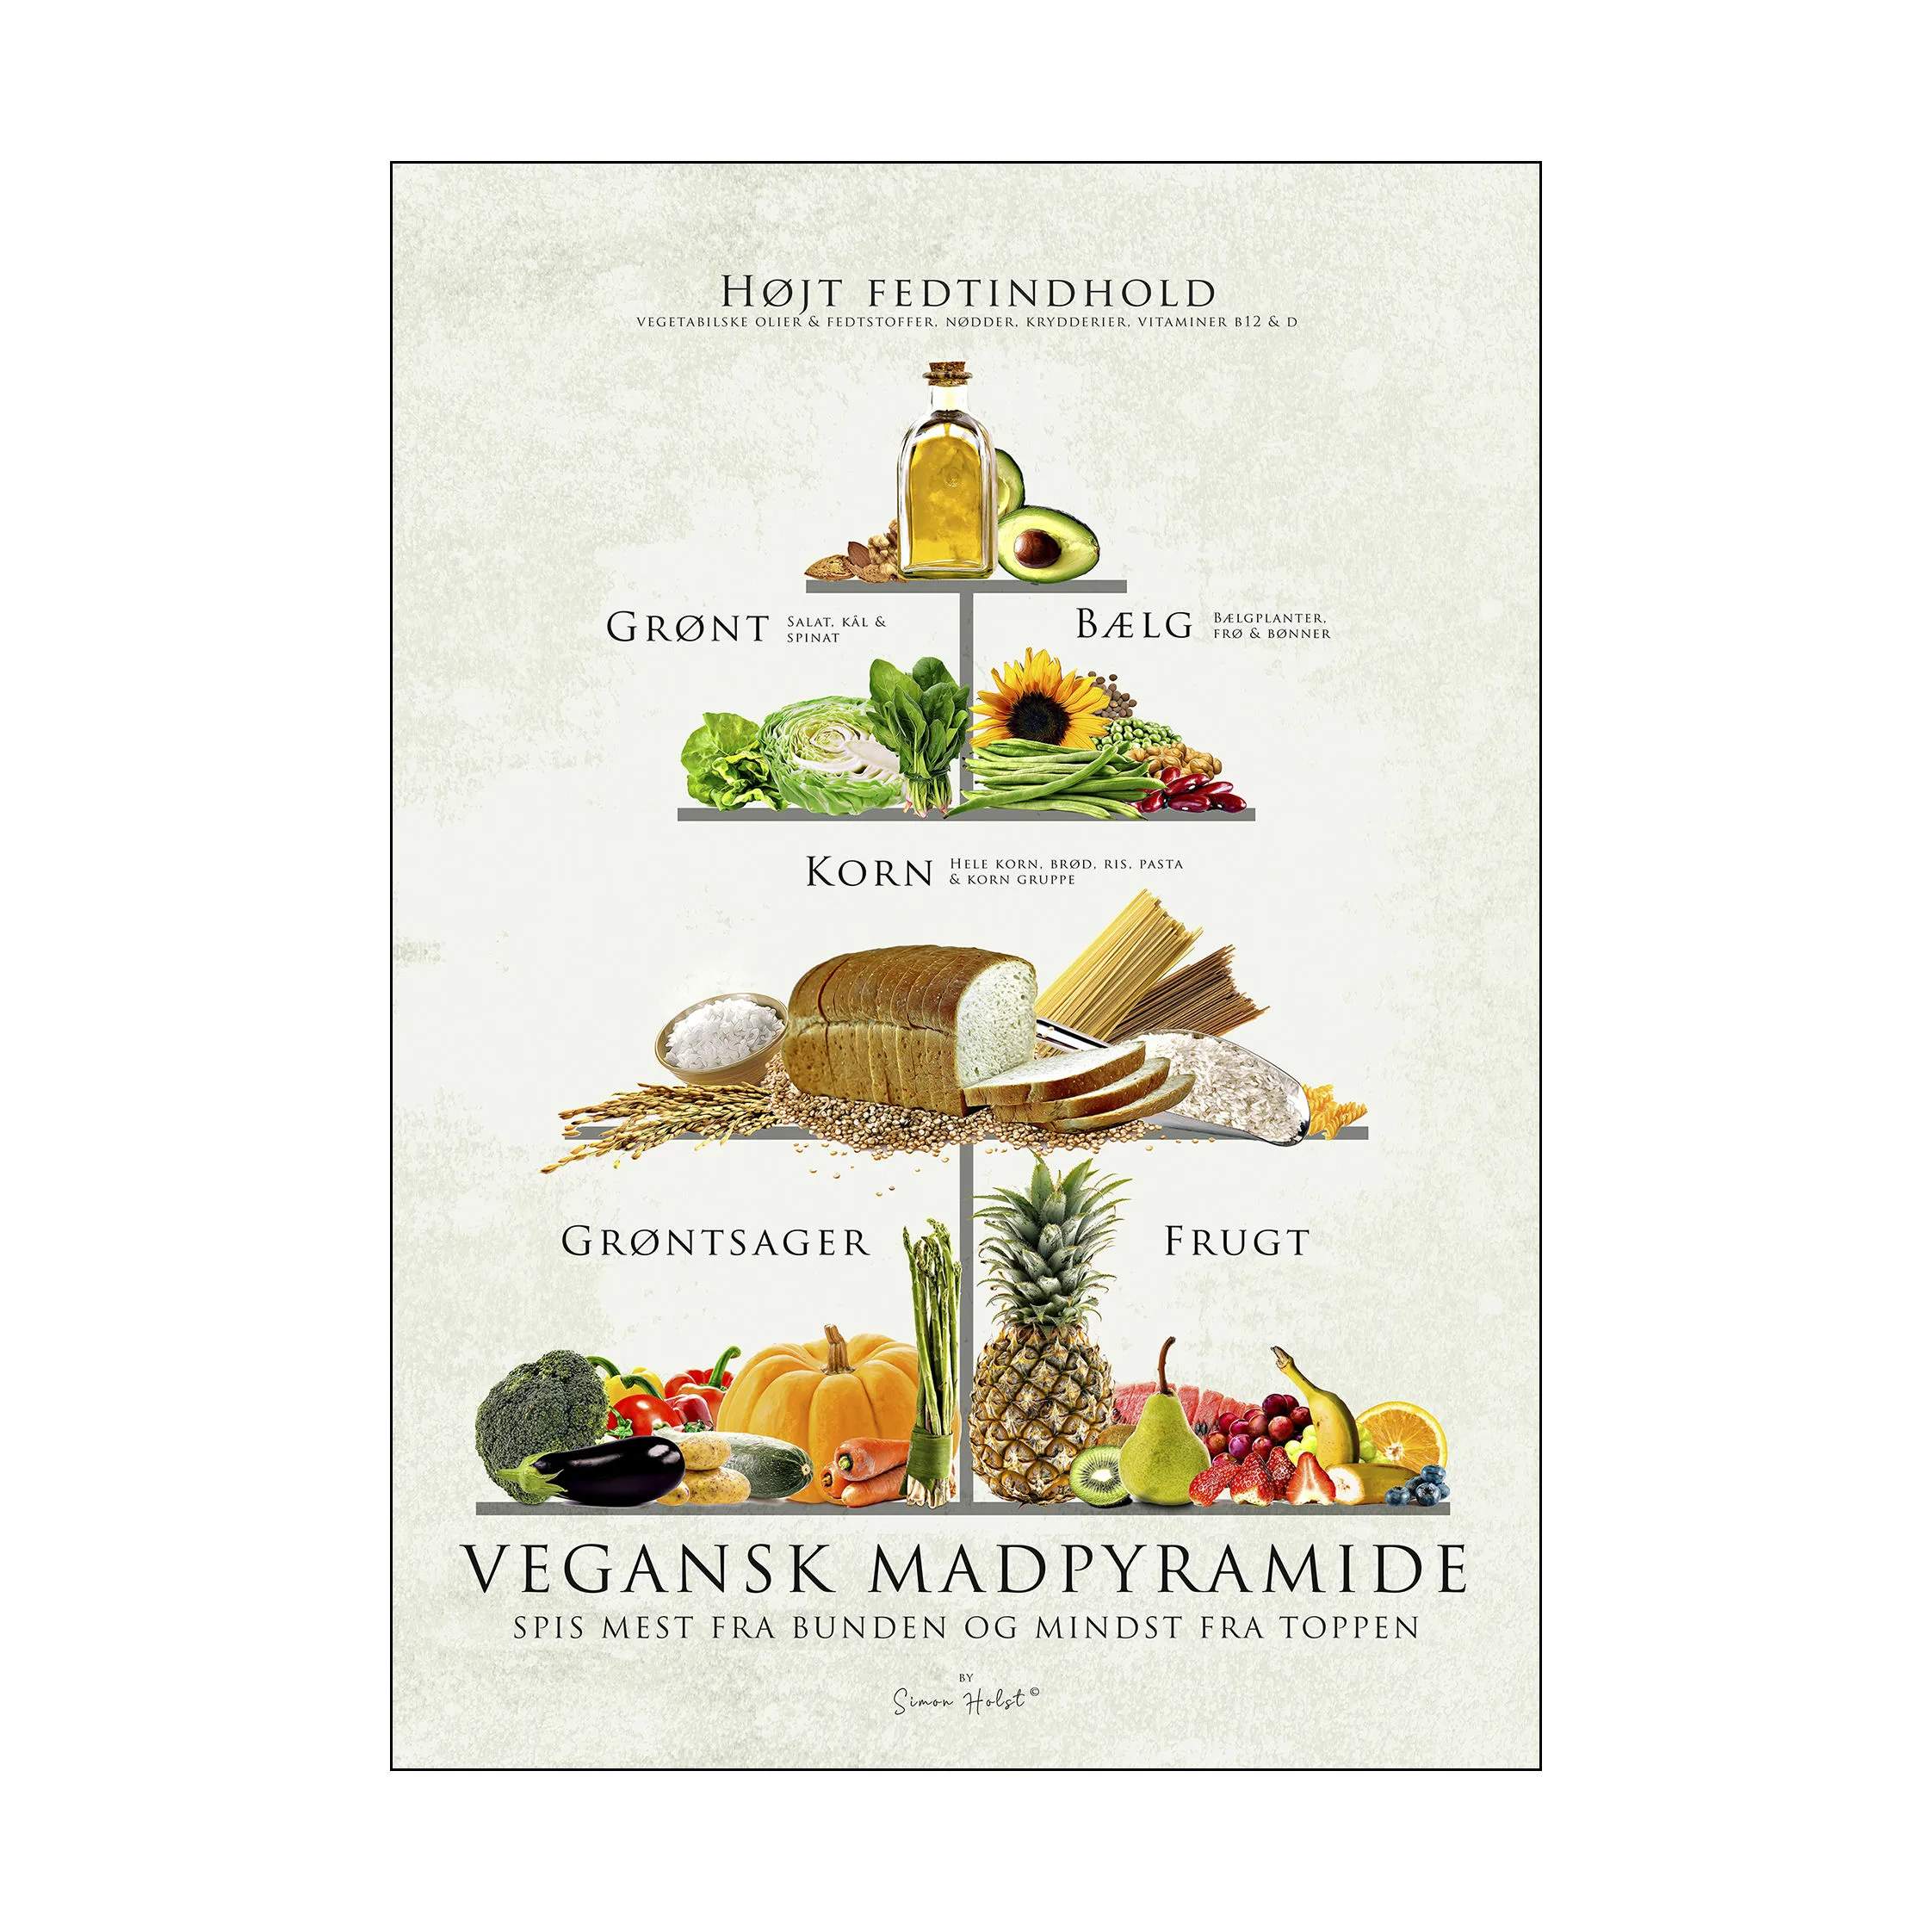 Simon Holst plakater plakat - Vegansk mad pyramide